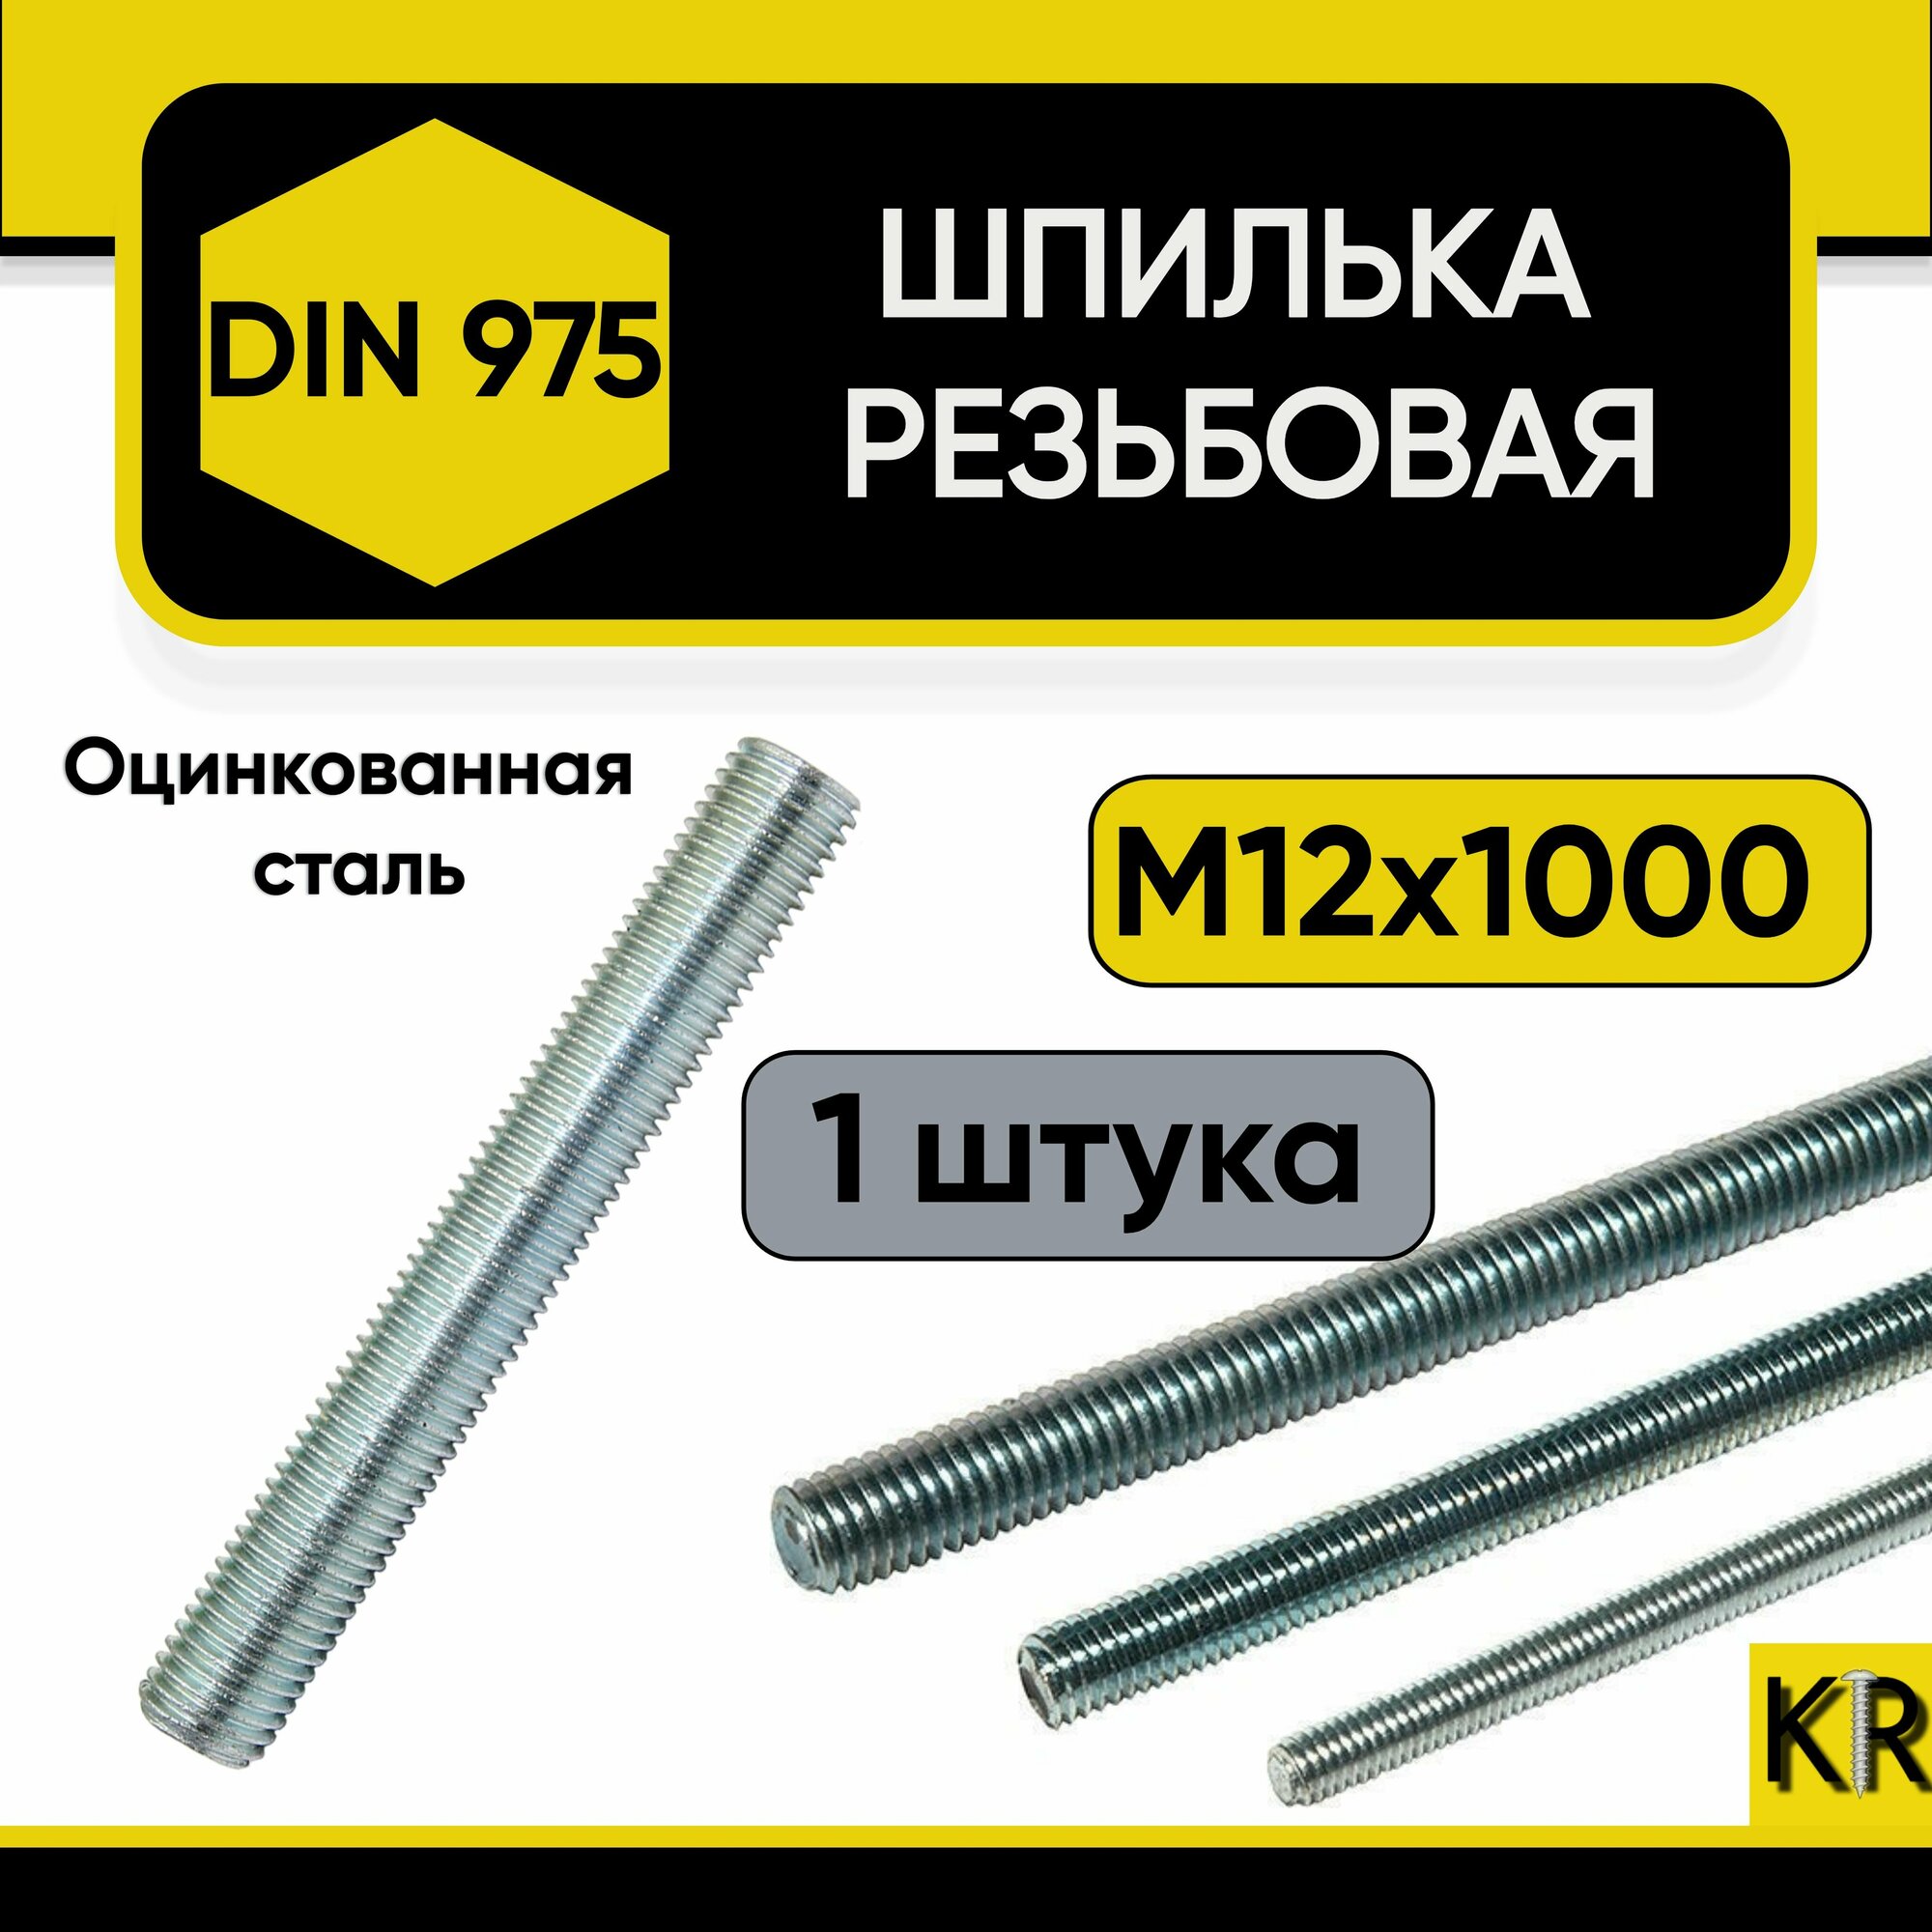 Шпилька резьбовая М12 х 1000 мм 1 шт. DIN 975 оцинкованная стальная